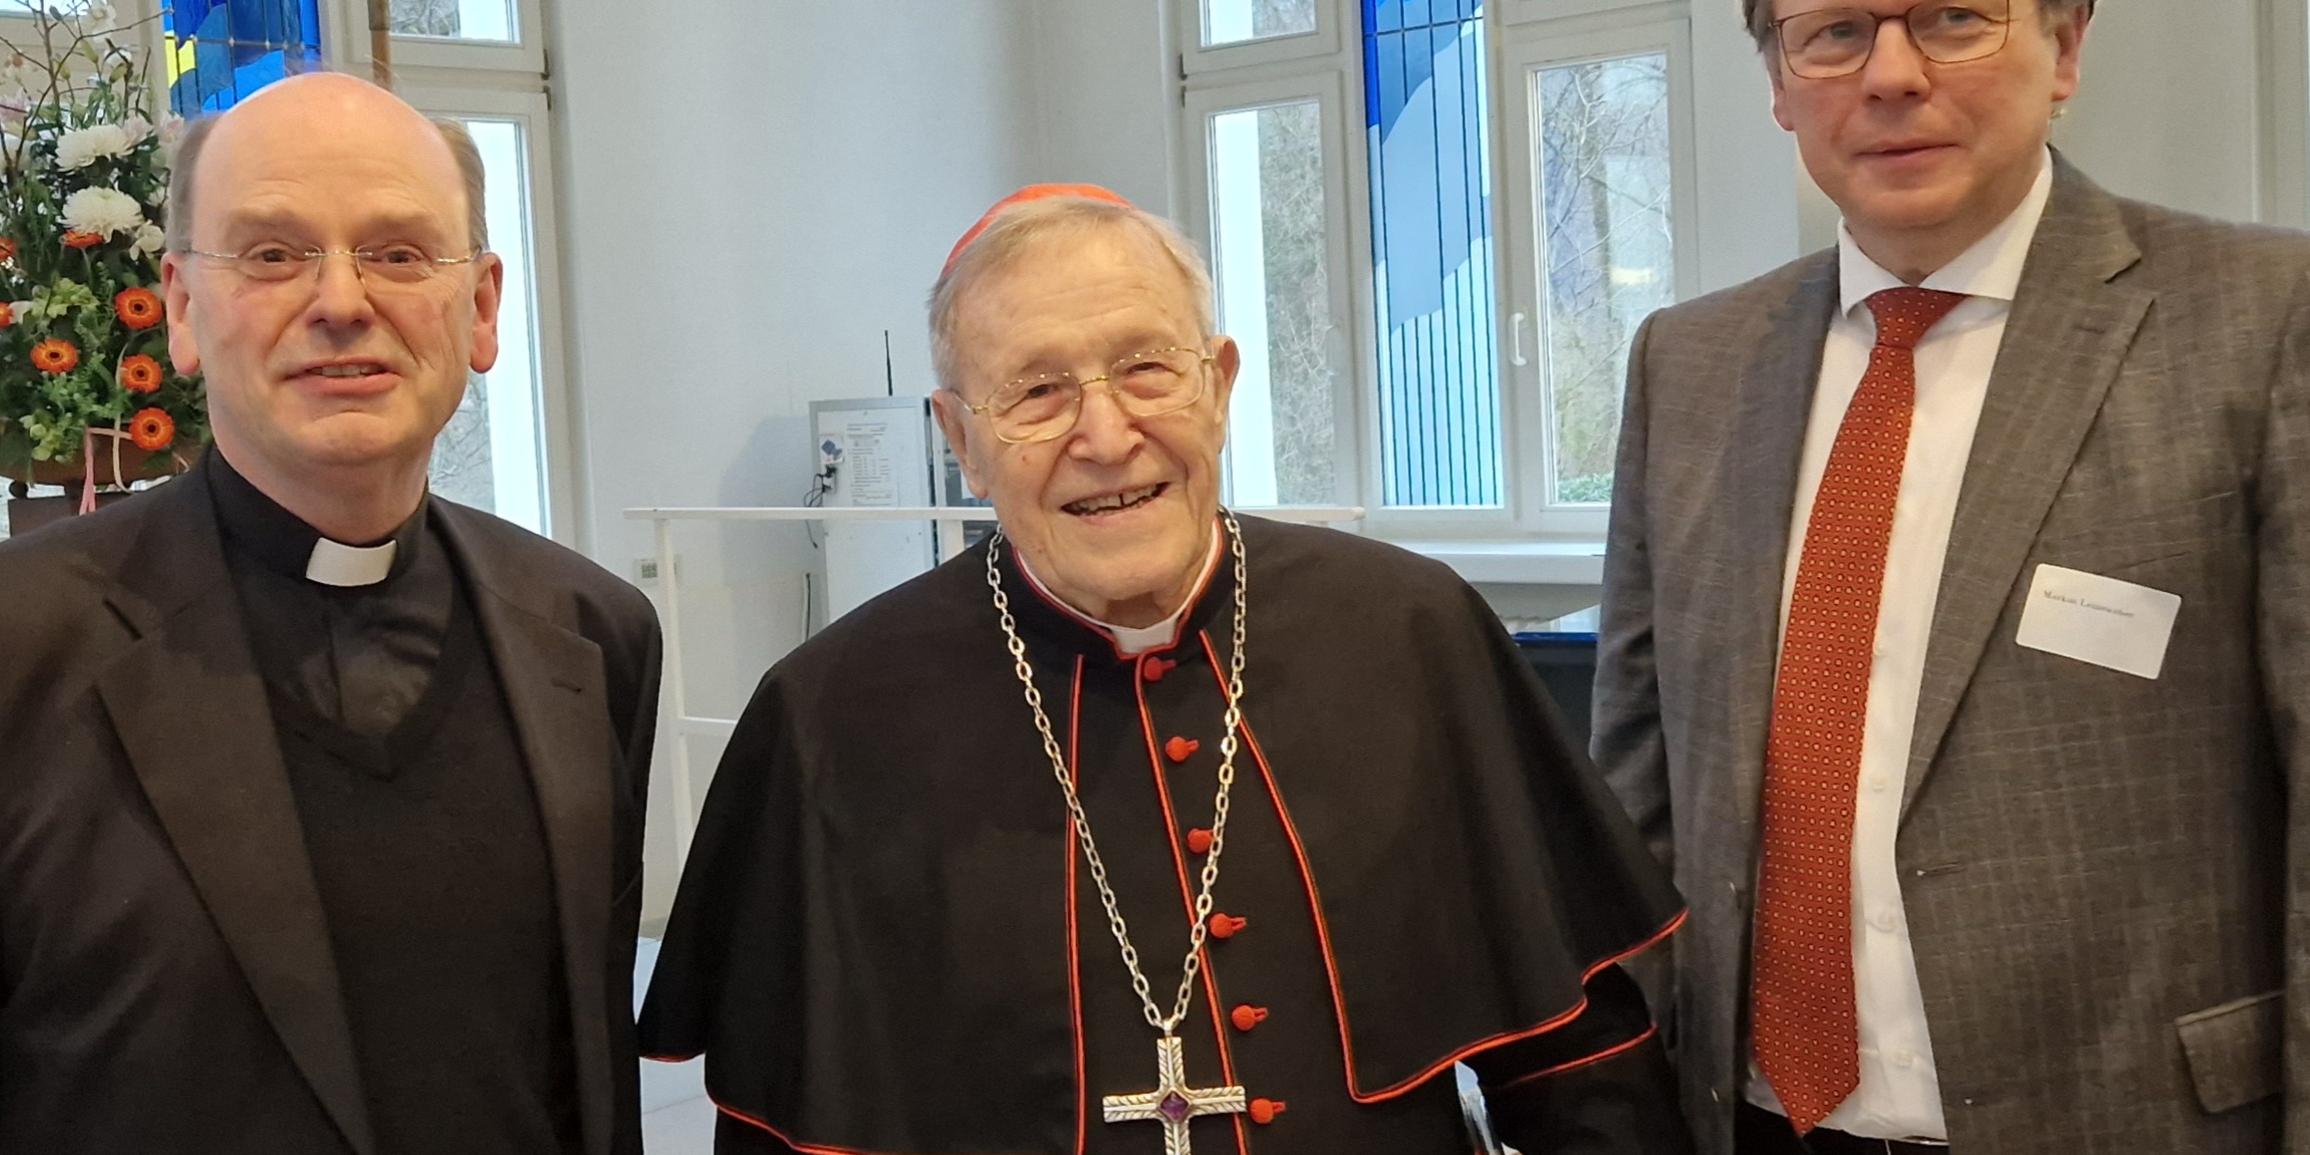 Weihbischof Brahm (links) und Markus Leineweber, Hausoberer des Krankenhauses der Barmherzigen Brüder Trier (rechts) gratulieren Kardinal Kasper.